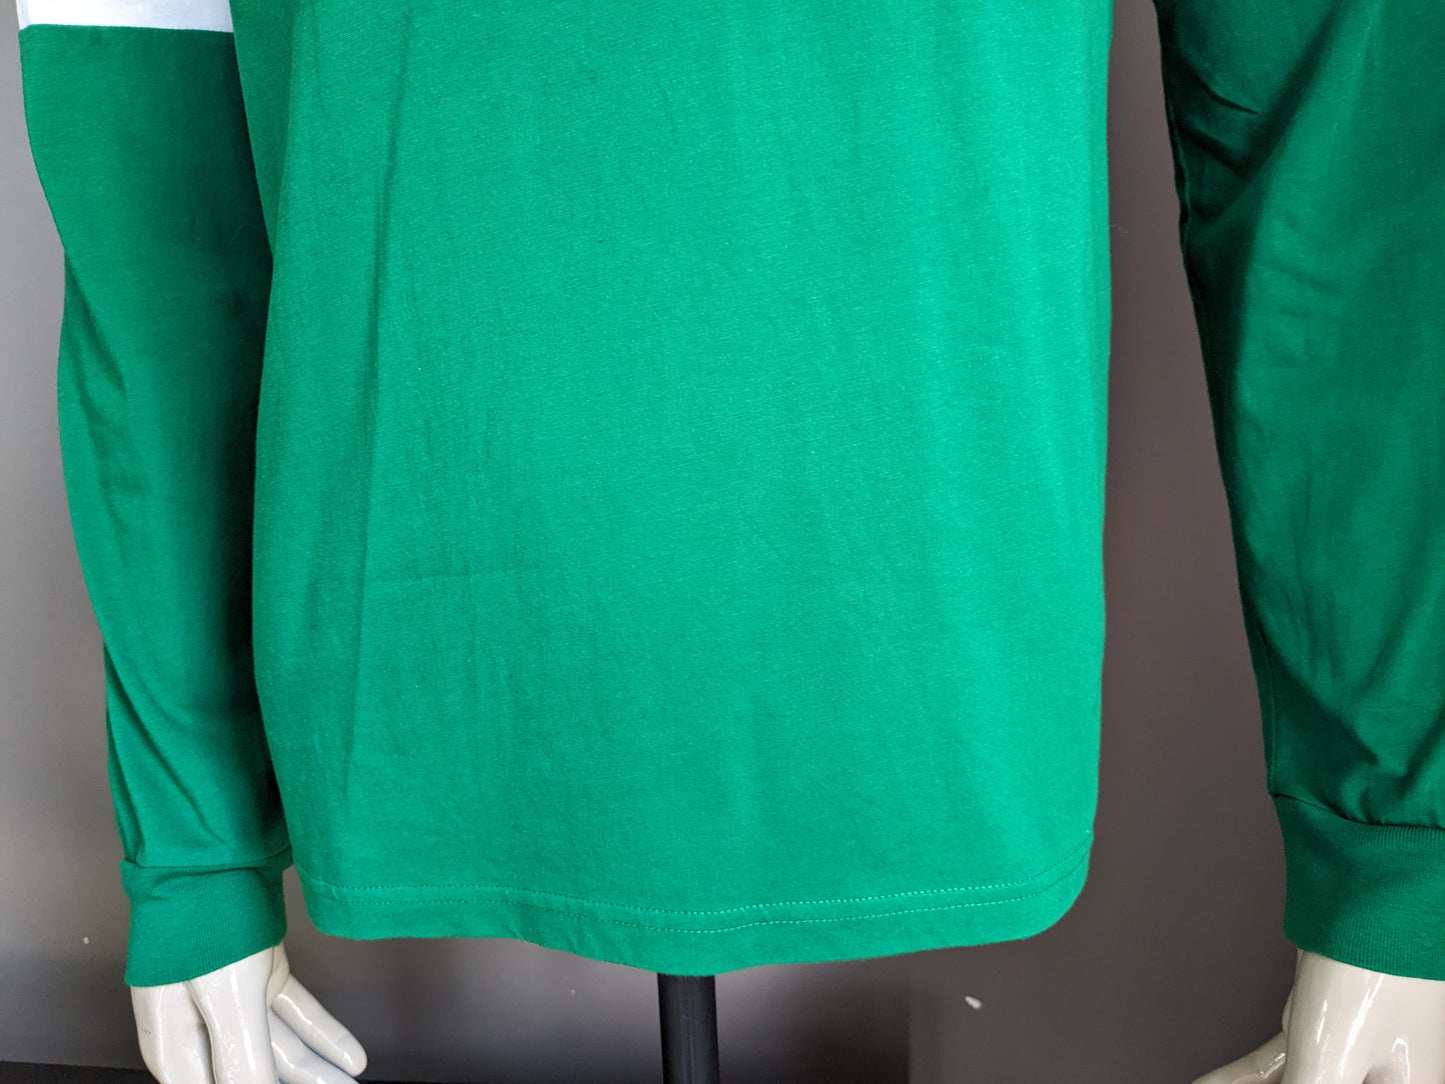 Polo Sport Ralph Lauren Hoodie. dunne stof. Groen Blauw Wit gekleurd. Maat M.